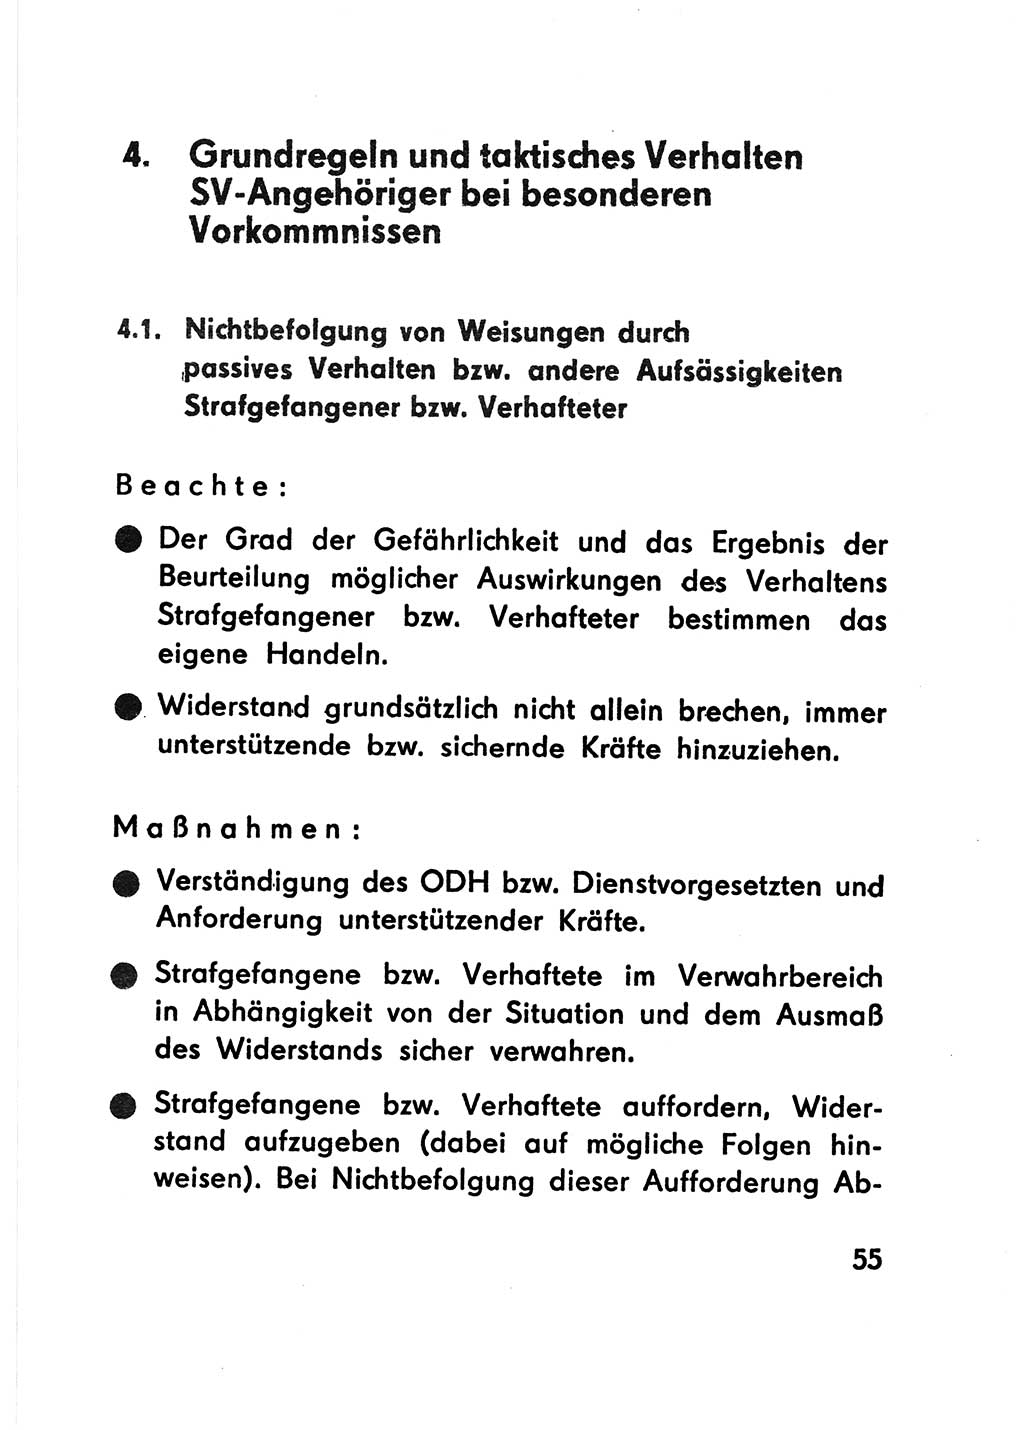 Merkbuch für SV-Angehörige [Strafvollzug (SV) Deutsche Demokratische Republik (DDR)] 1975, Seite 55 (SV-Angeh. DDR 1975, S. 55)